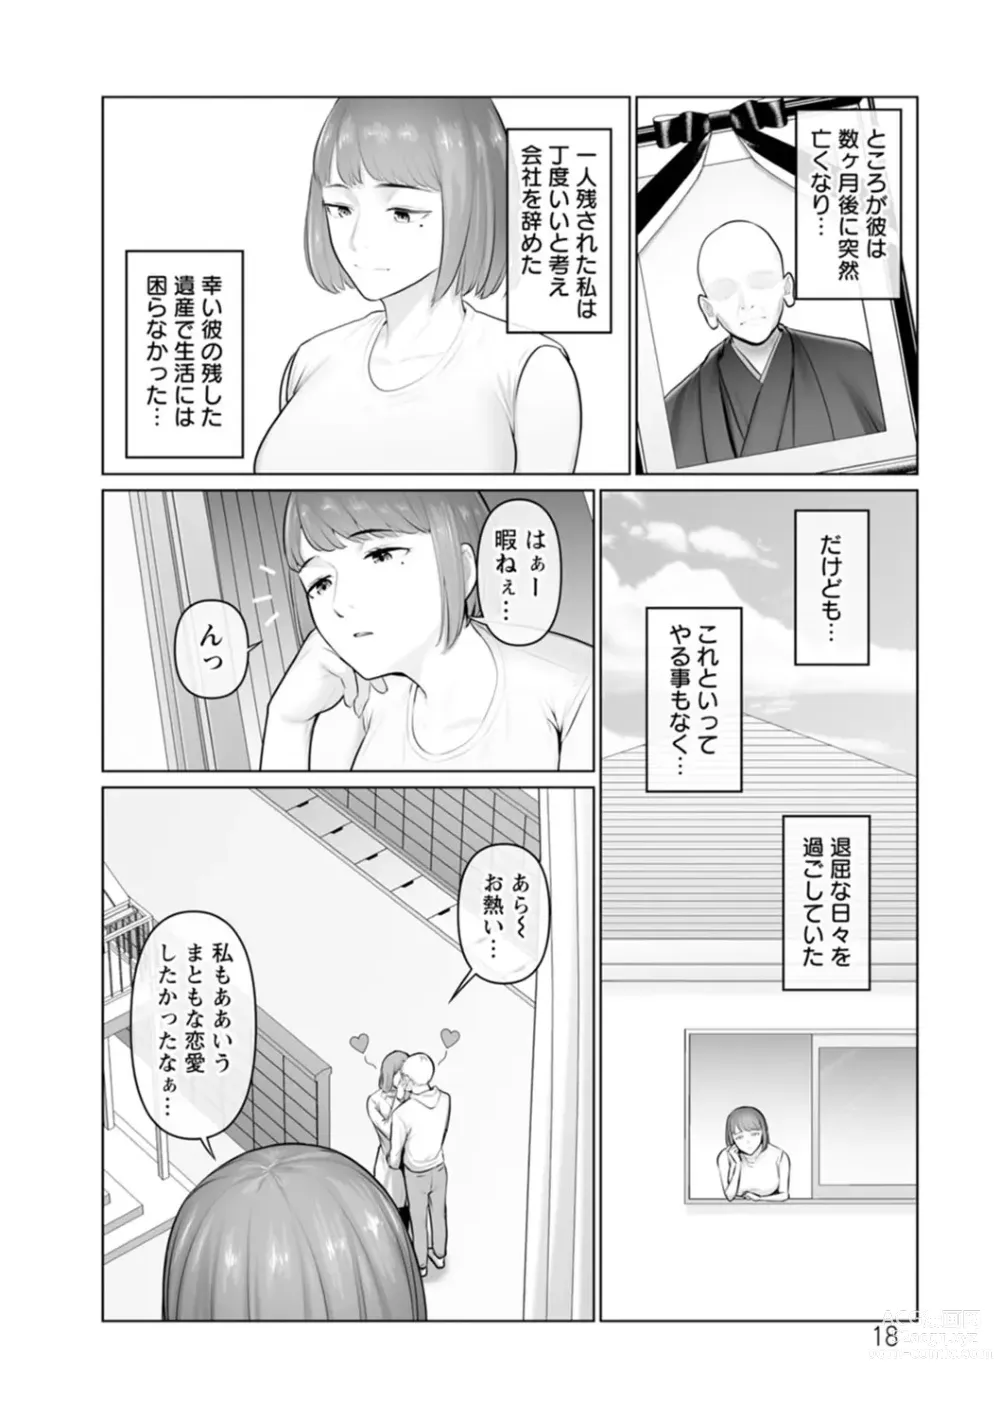 Page 204 of manga Sugao no kimi o okashitai